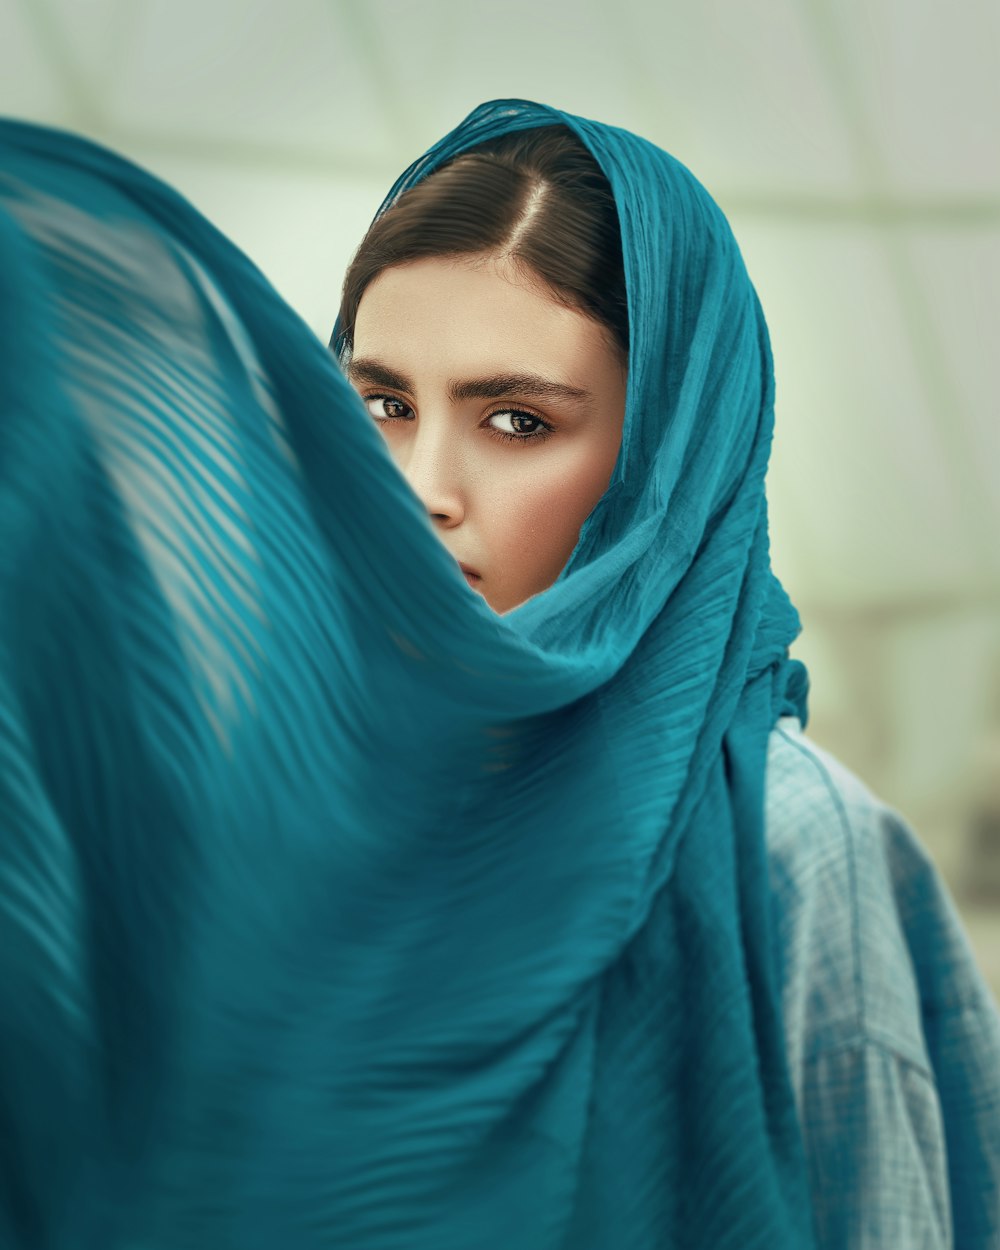 mulher no hijab azul cobrindo seu rosto com tecido azul